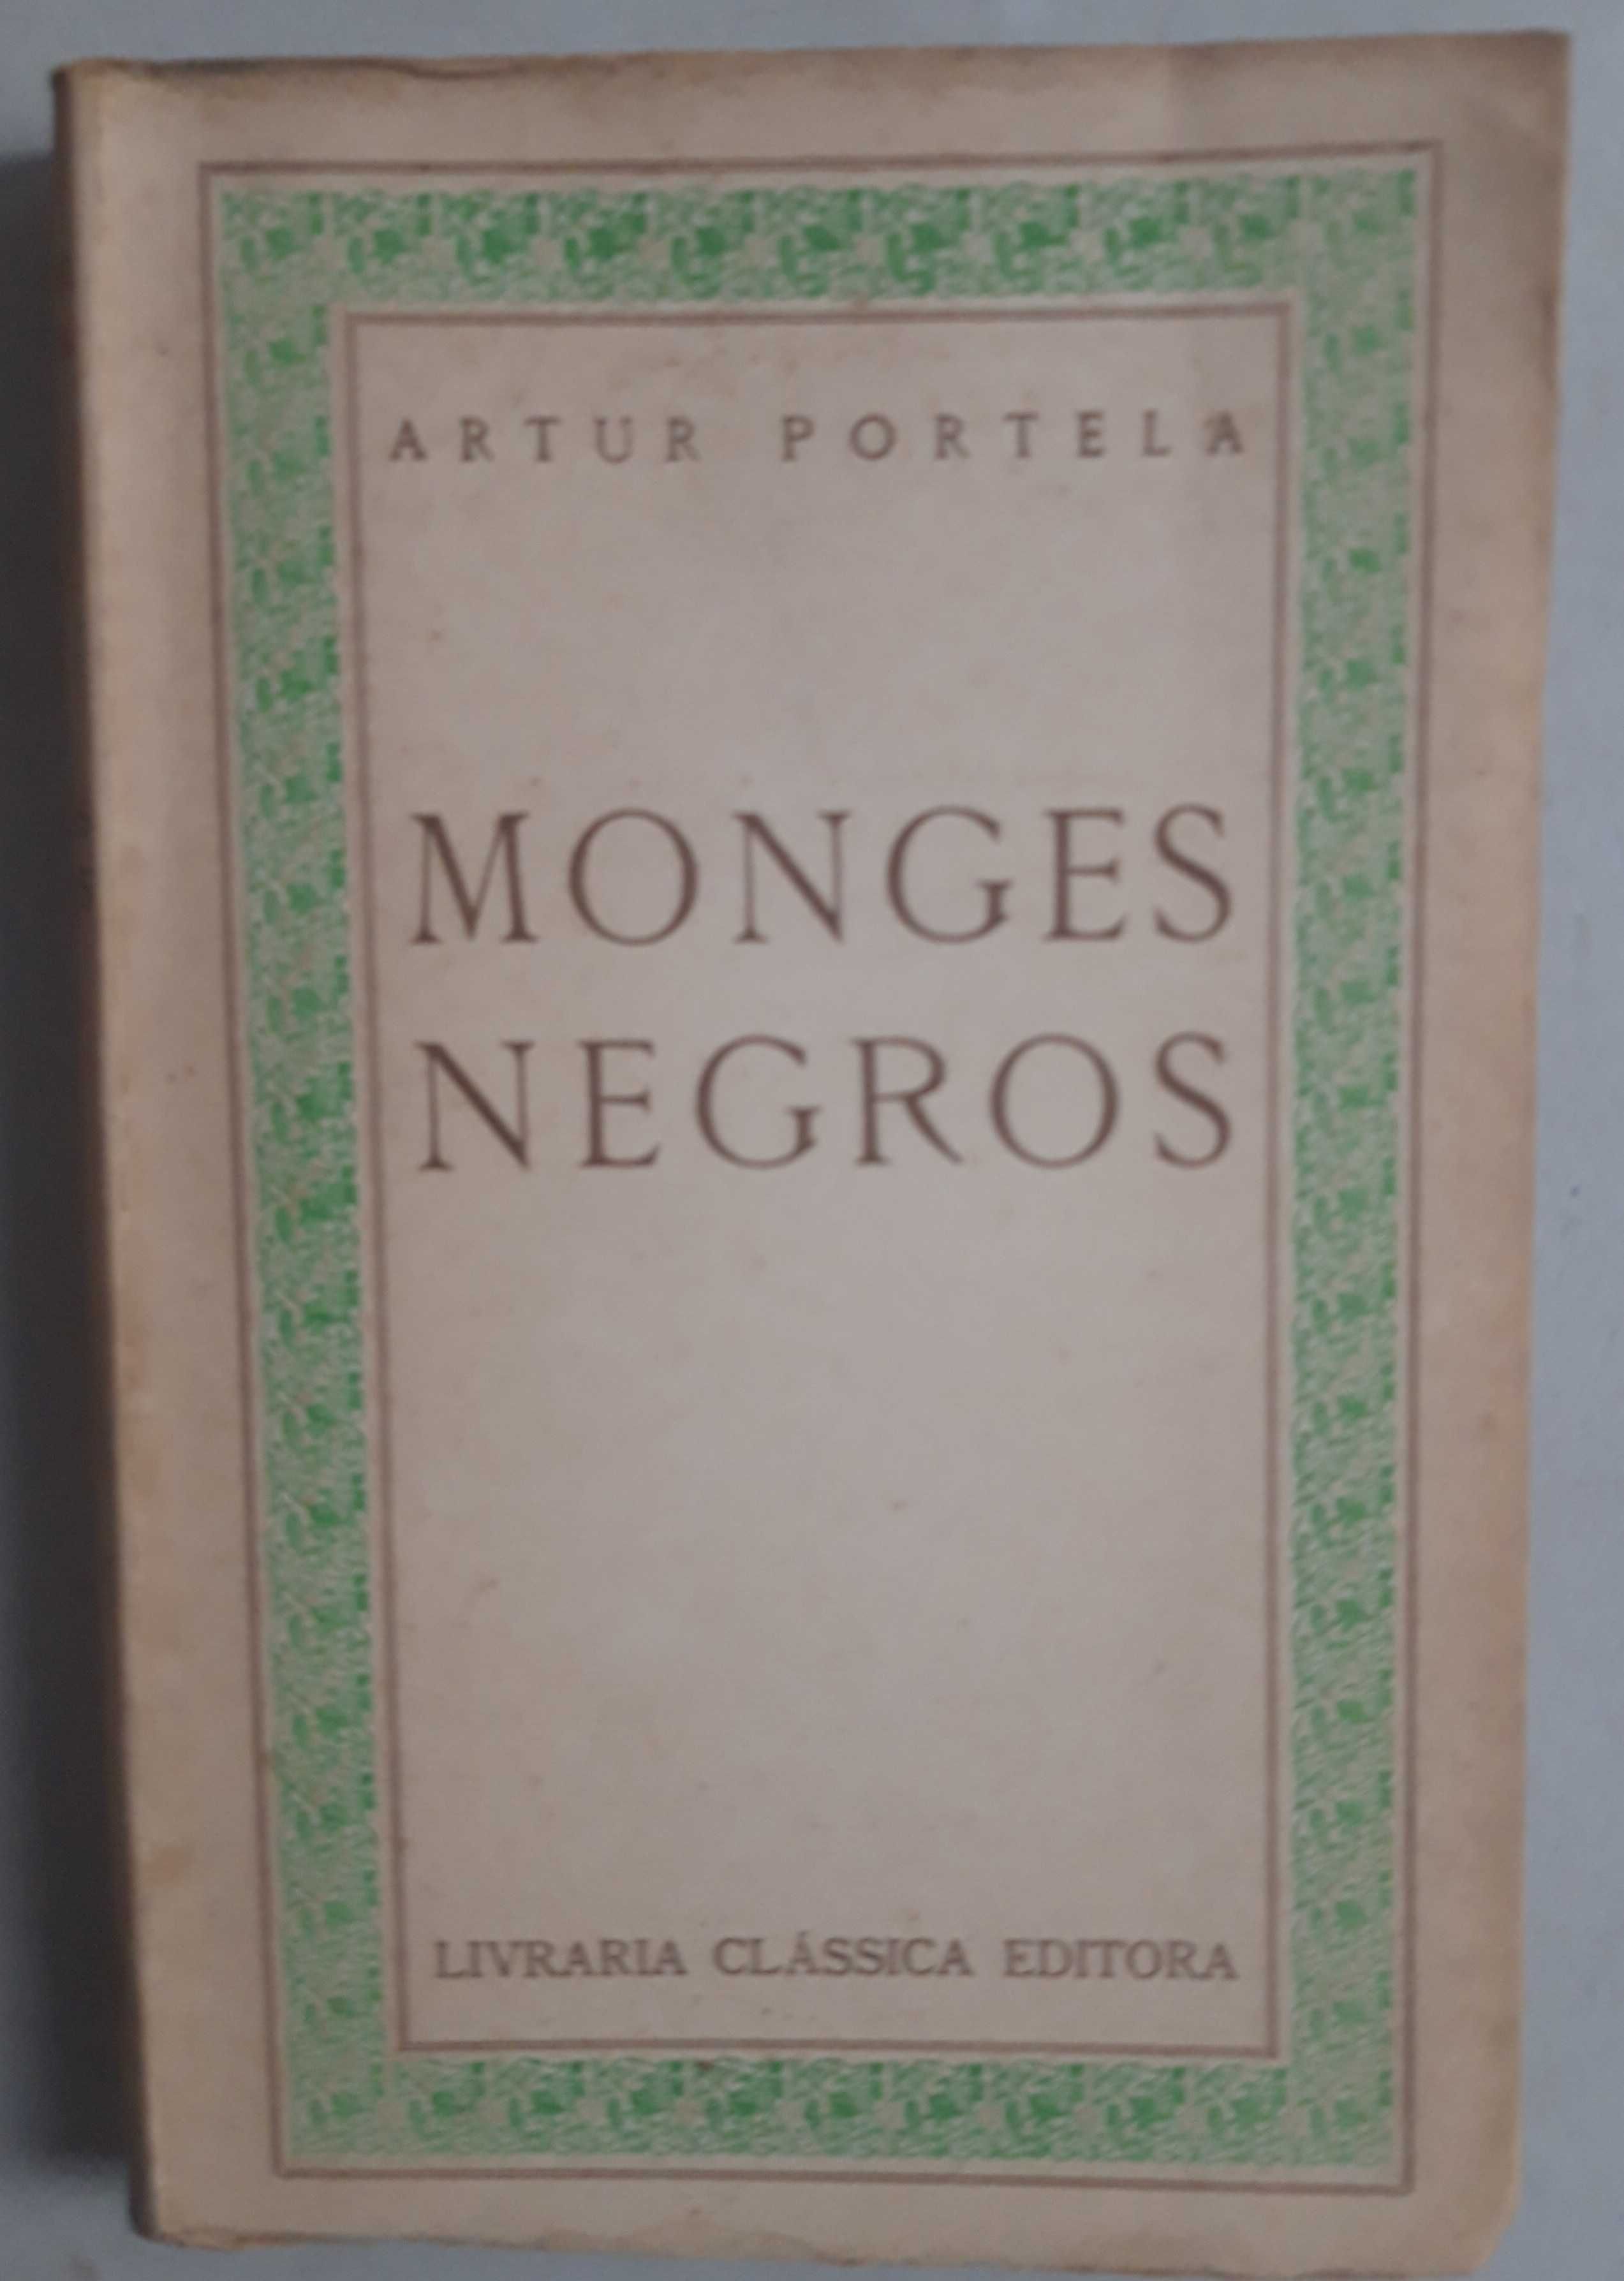 Livro PA-2 - Artur Portela - Monges Negros